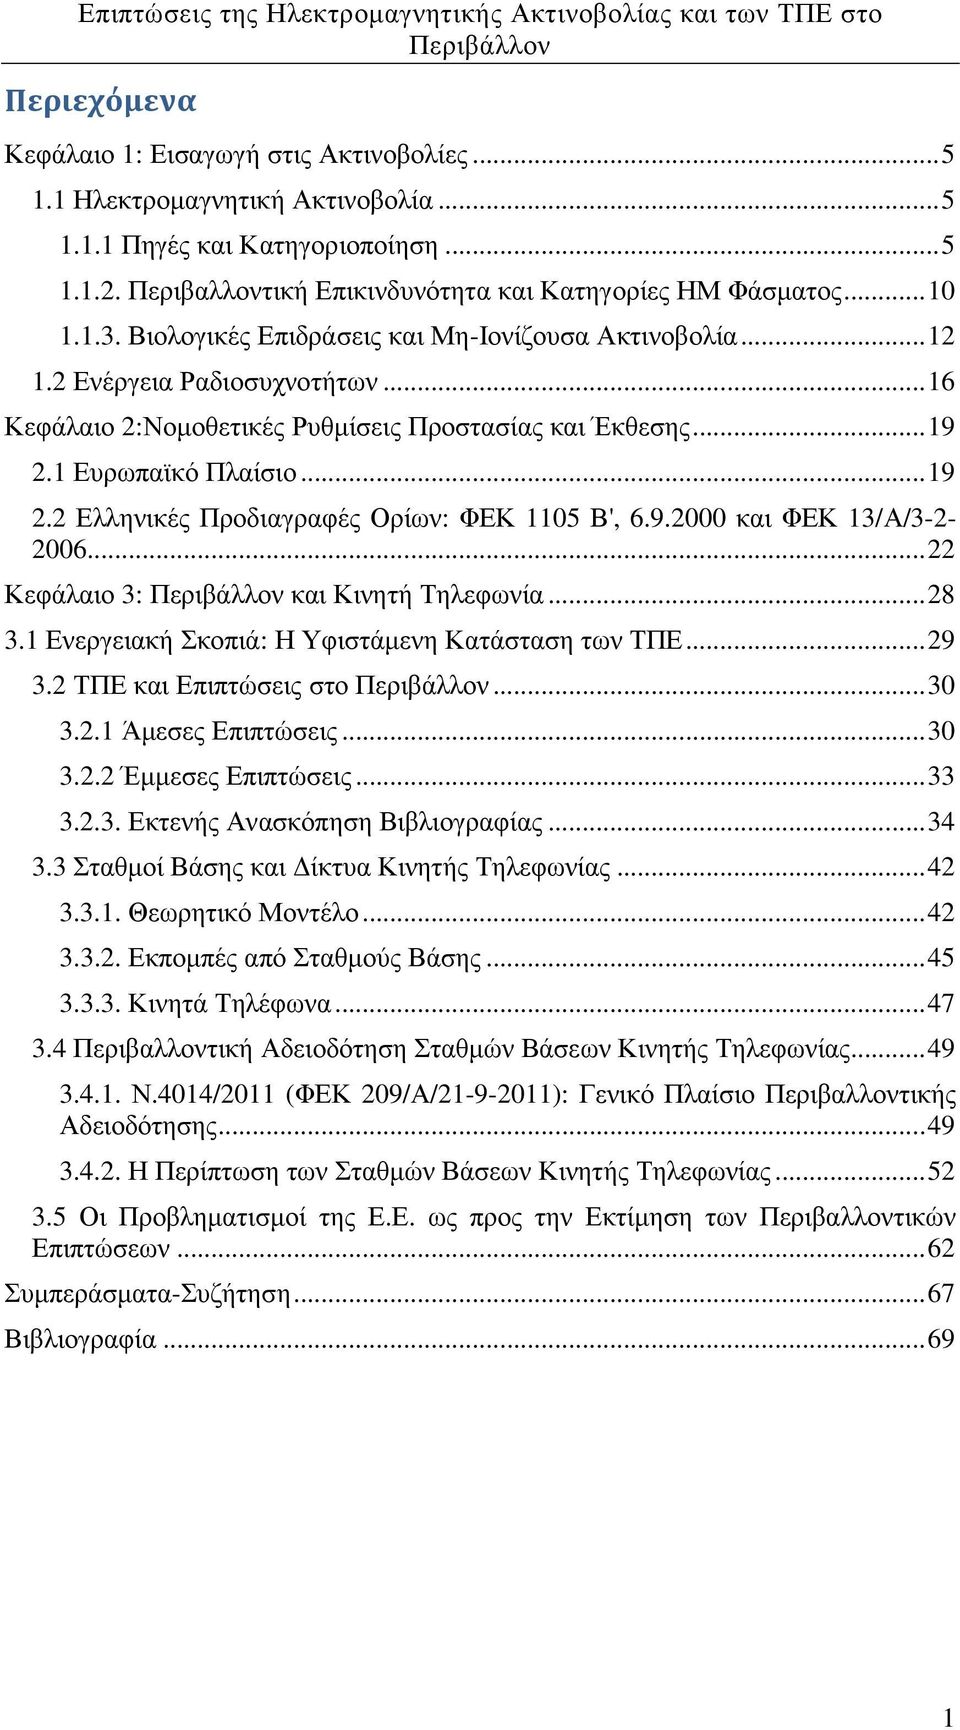 1 Ευρωπαϊκό Πλαίσιο... 19 2.2 Ελληνικές Προδιαγραφές Ορίων: ΦΕΚ 1105 Β', 6.9.2000 και ΦΕΚ 13/Α/3-2- 2006... 22 Κεφάλαιο 3: και Κινητή Τηλεφωνία... 28 3.